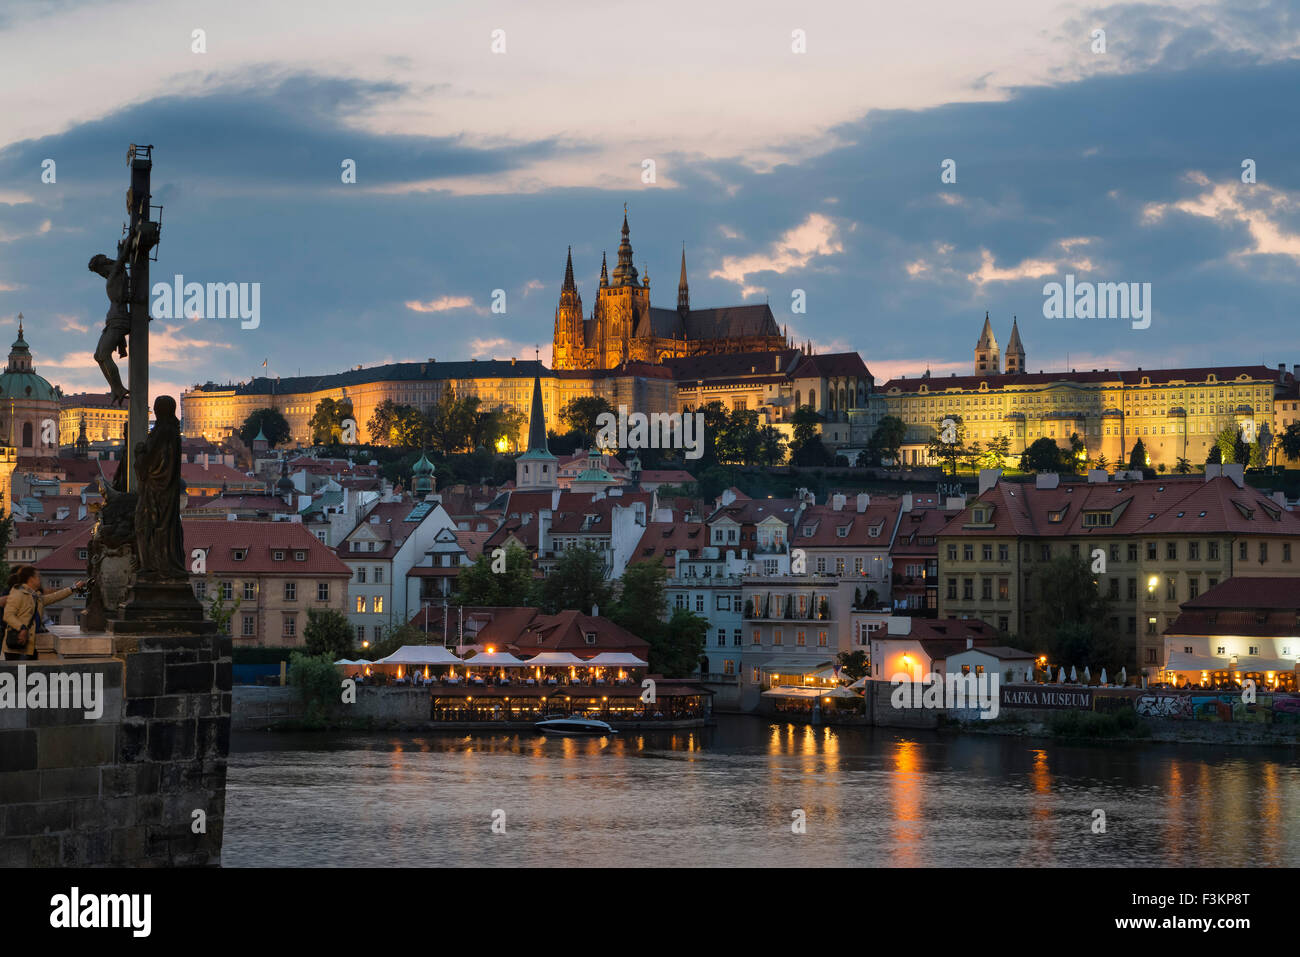 La cathédrale Saint-Guy du Château de Prague et de la vieille ville, au crépuscule Banque D'Images